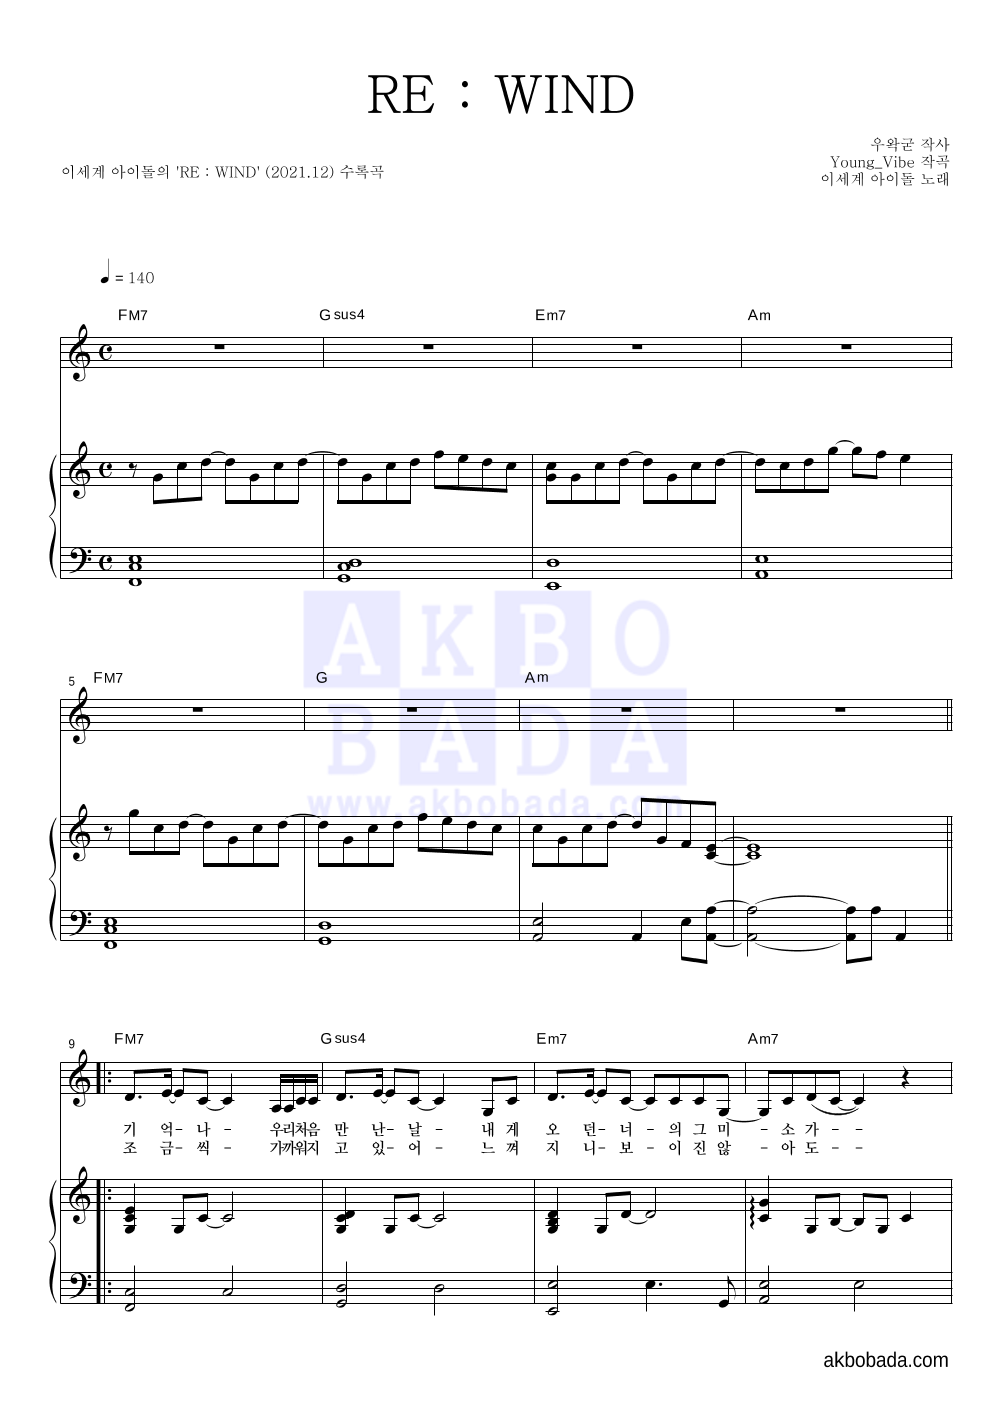 이세계 아이돌 - RE : WIND 피아노 3단 악보 